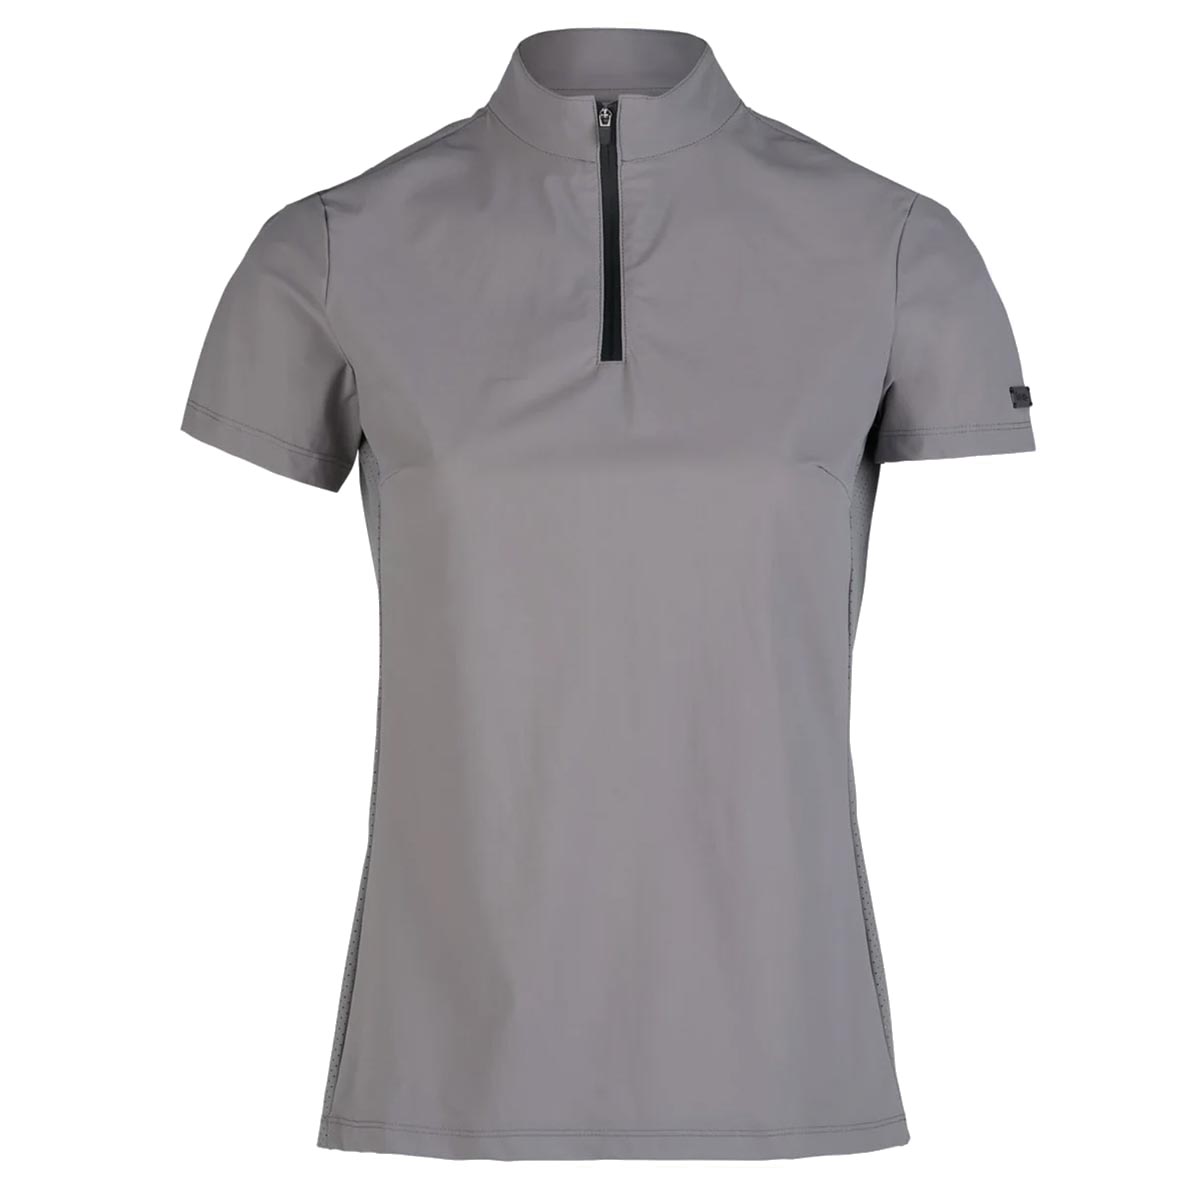 Trainingsshirt Horze Saphira Limited Edition Grijs, 38 in grijs